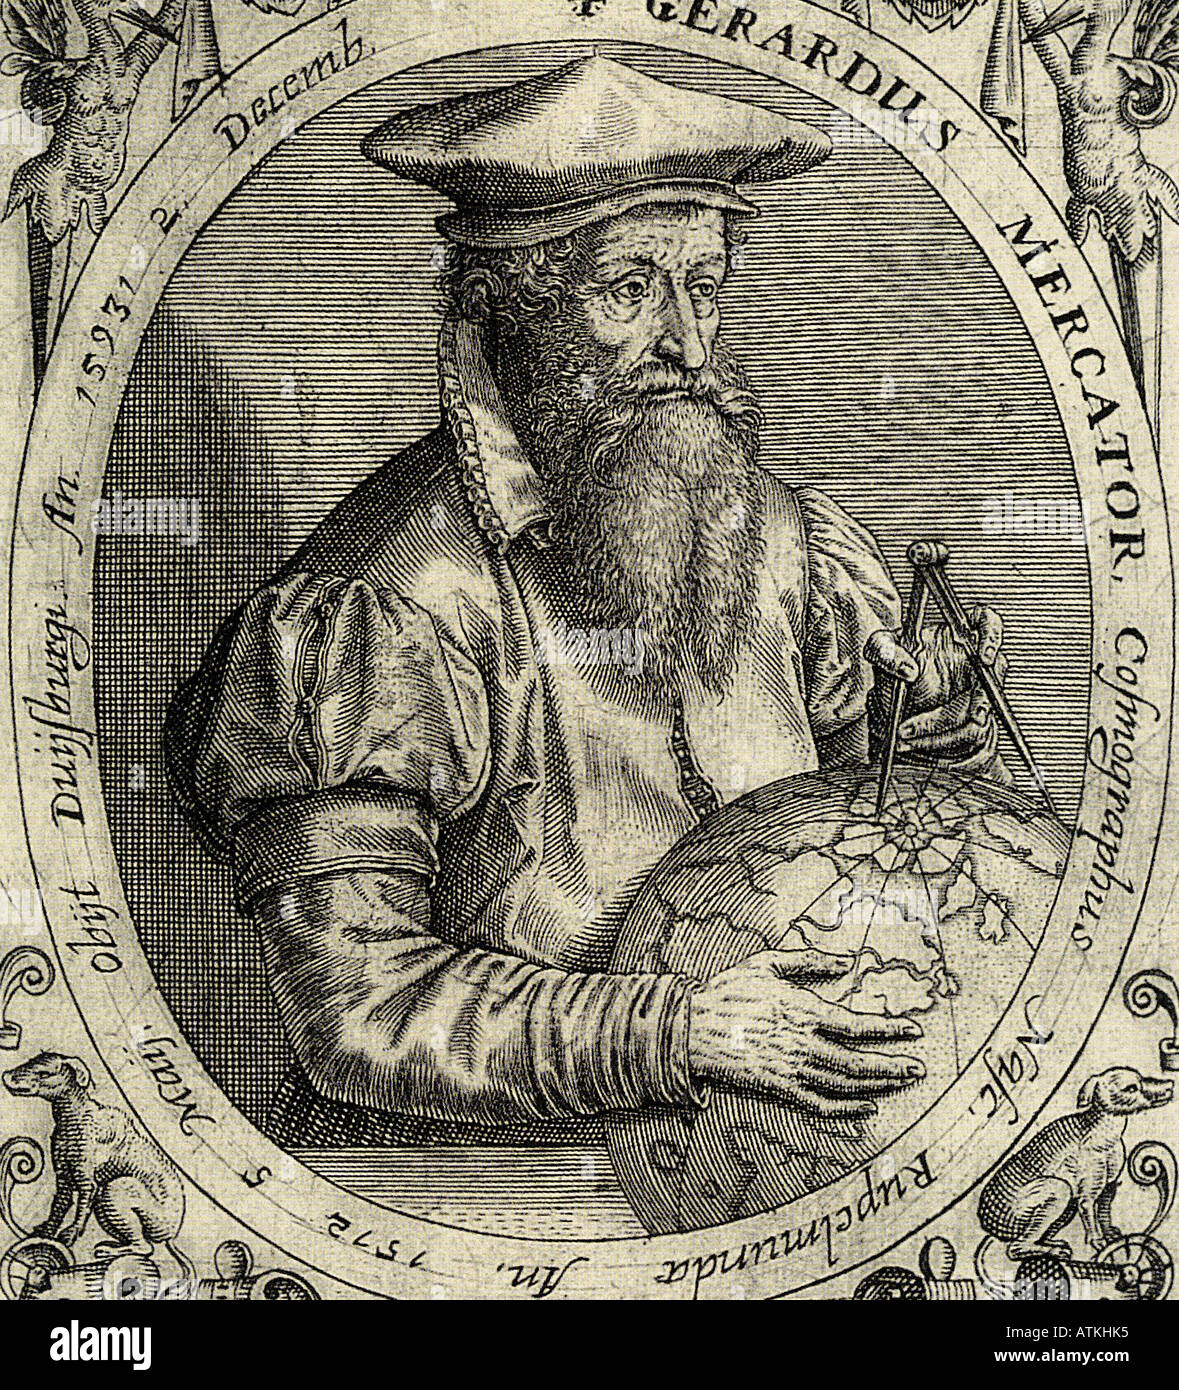 GERARDUS MERCATOR 1512 à 1594 cartographe flamand qui a introduit l'idée d'un plan cylindrique à la carte du monde Banque D'Images